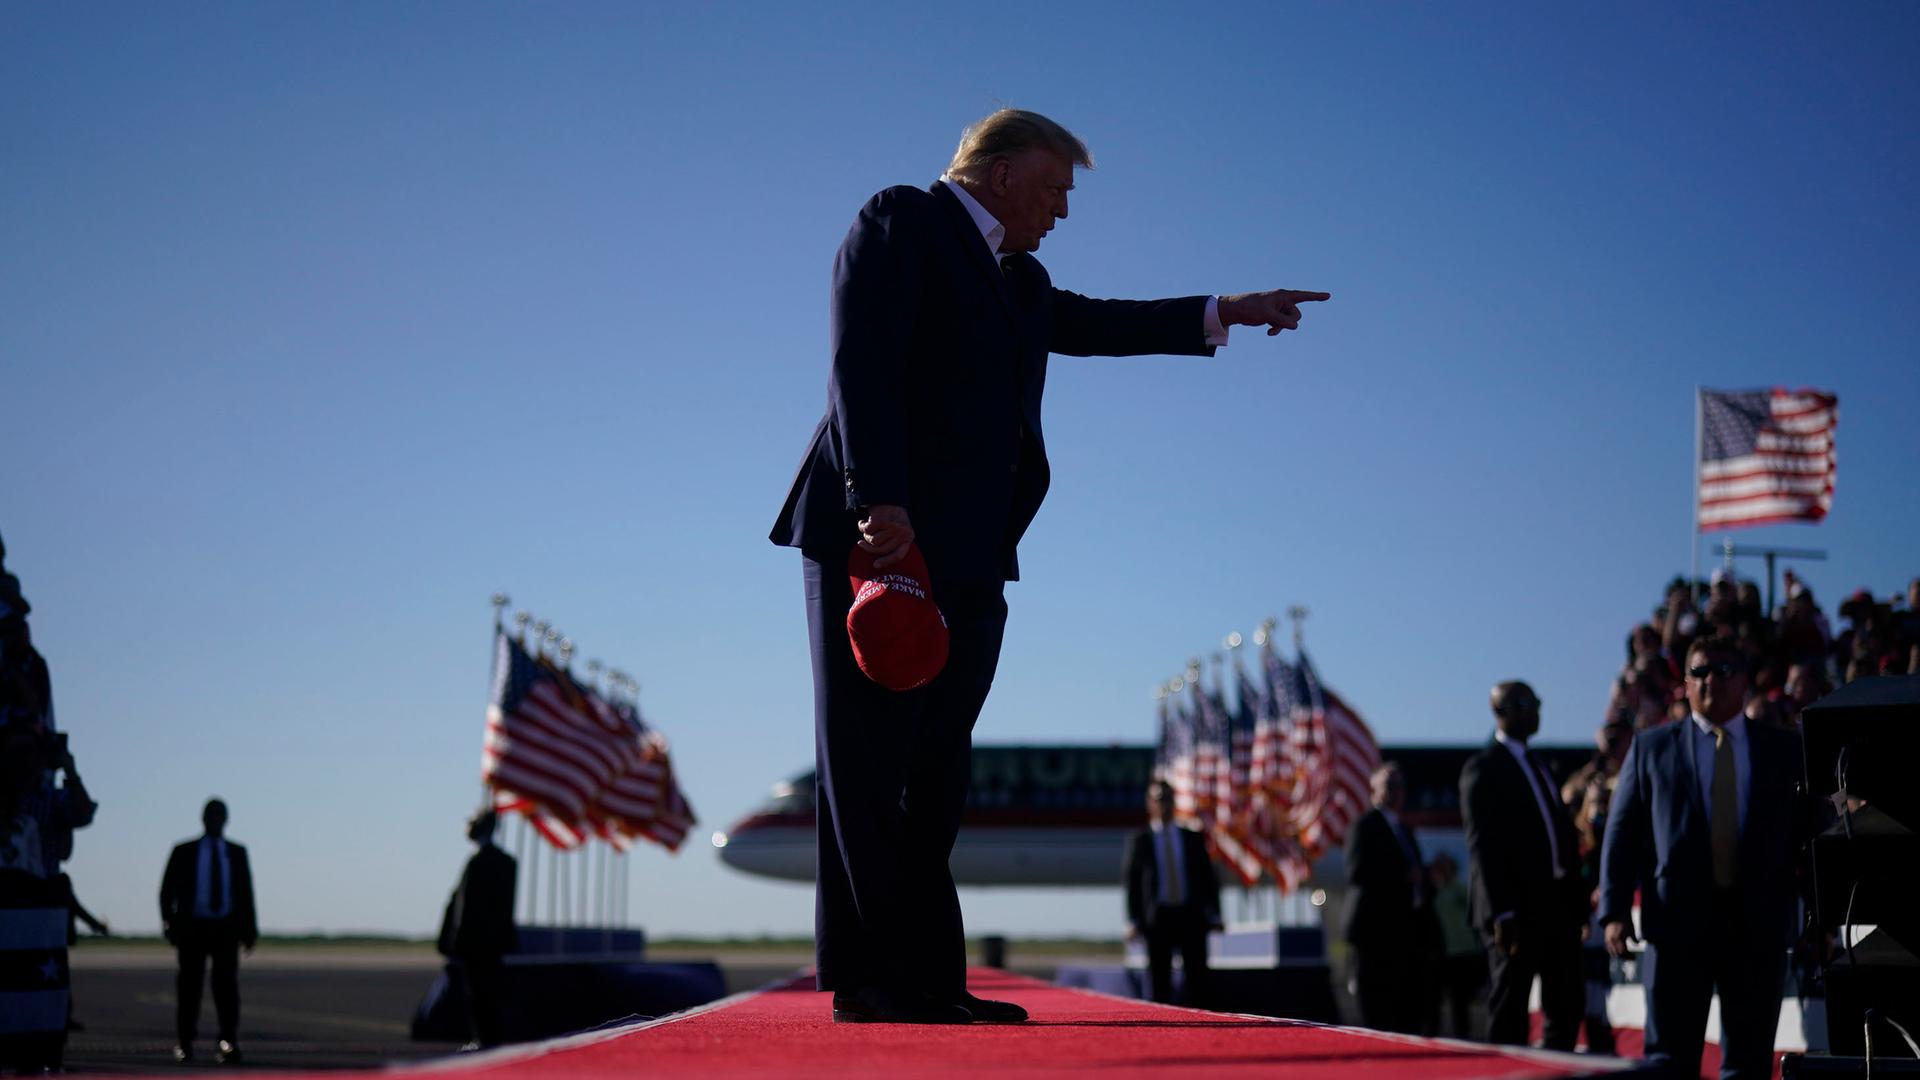 Die Silhouette von Donald Trump bei der Ankunft zu einer Wahlkampfveranstaltung auf einem roten Teppich am Waco Regional Airport in Waco, Texas.